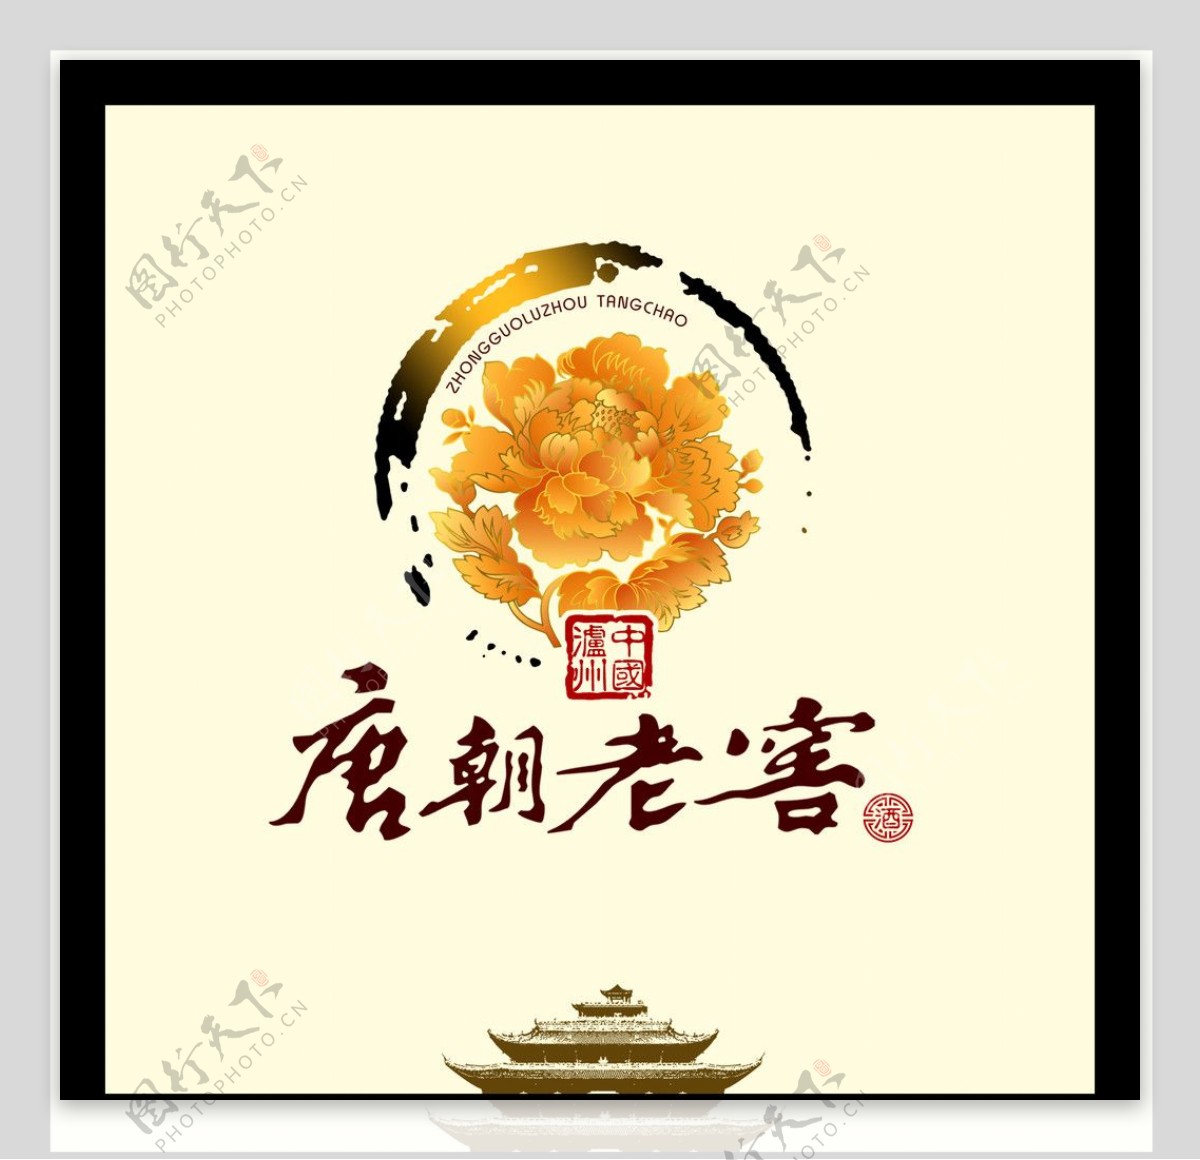 唐朝老窖logo图片